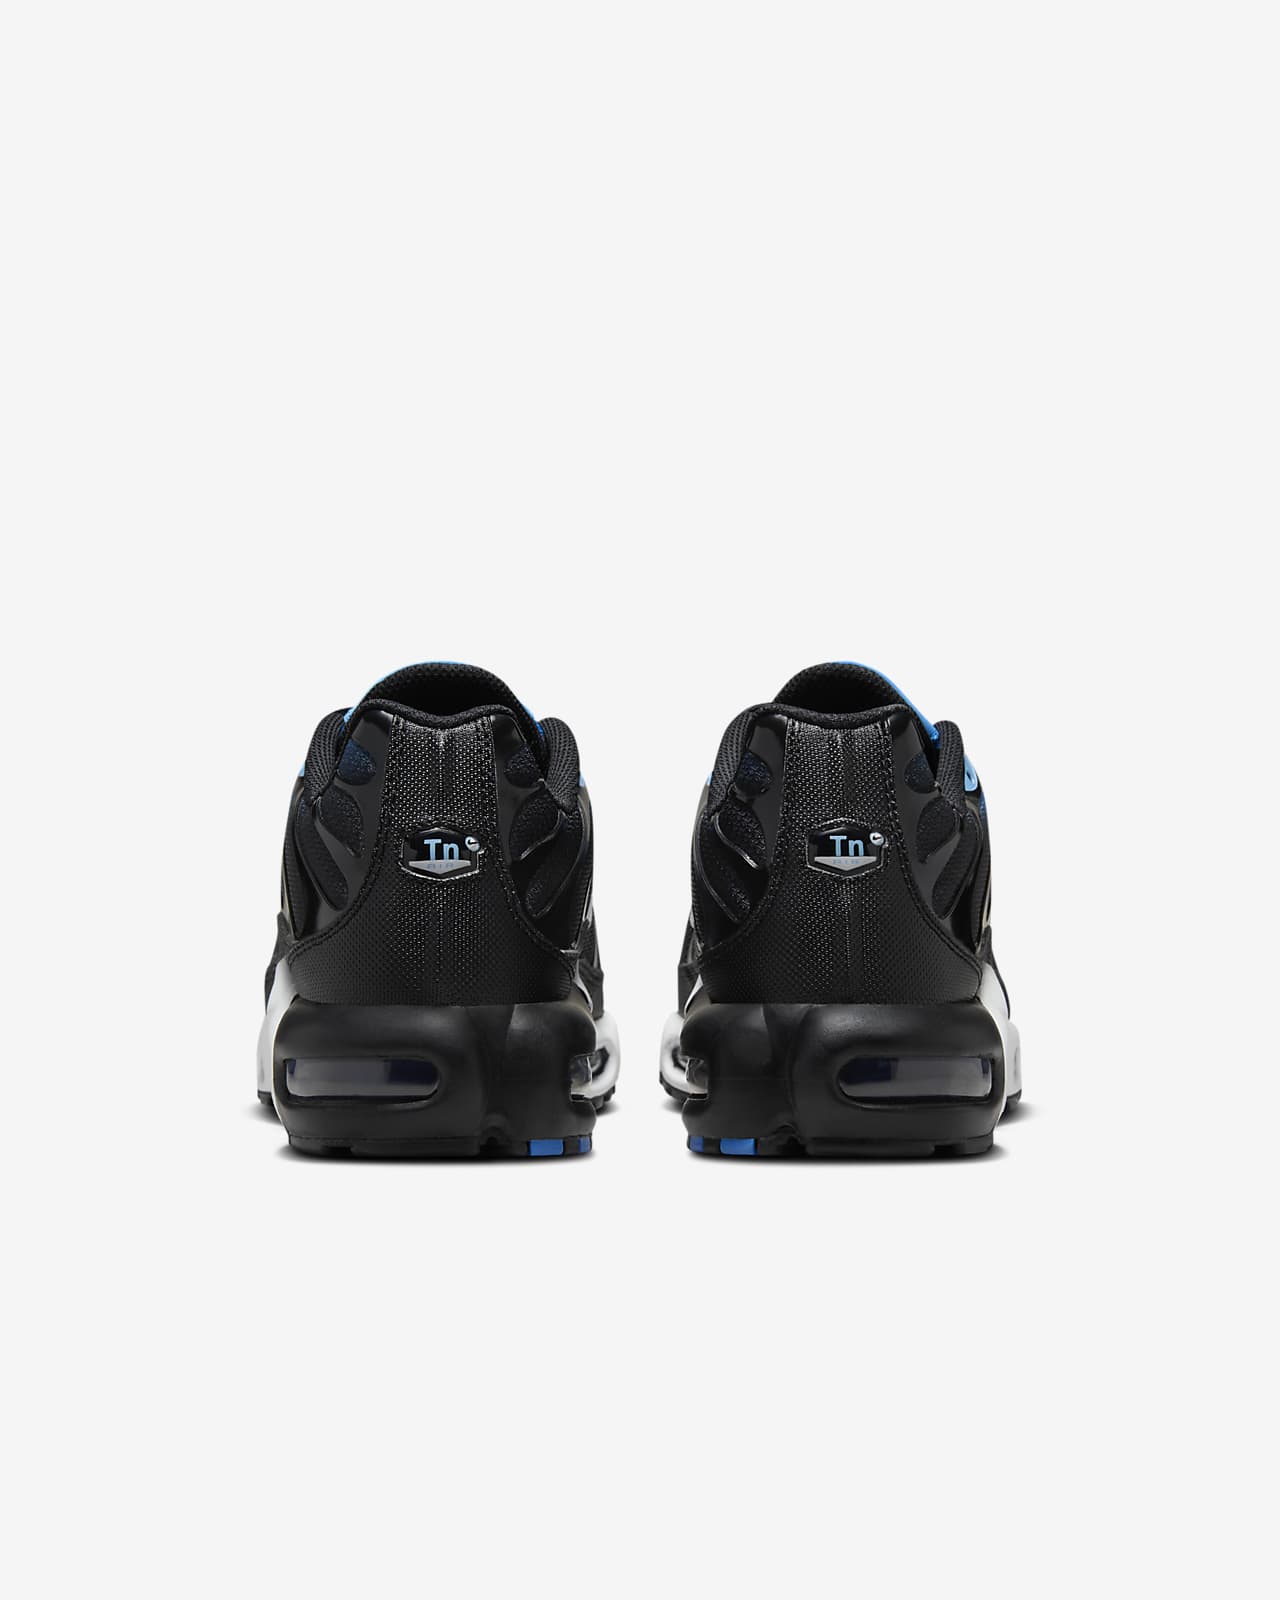 Nike Air Max Plus Black/Photo Blue DM0032-402